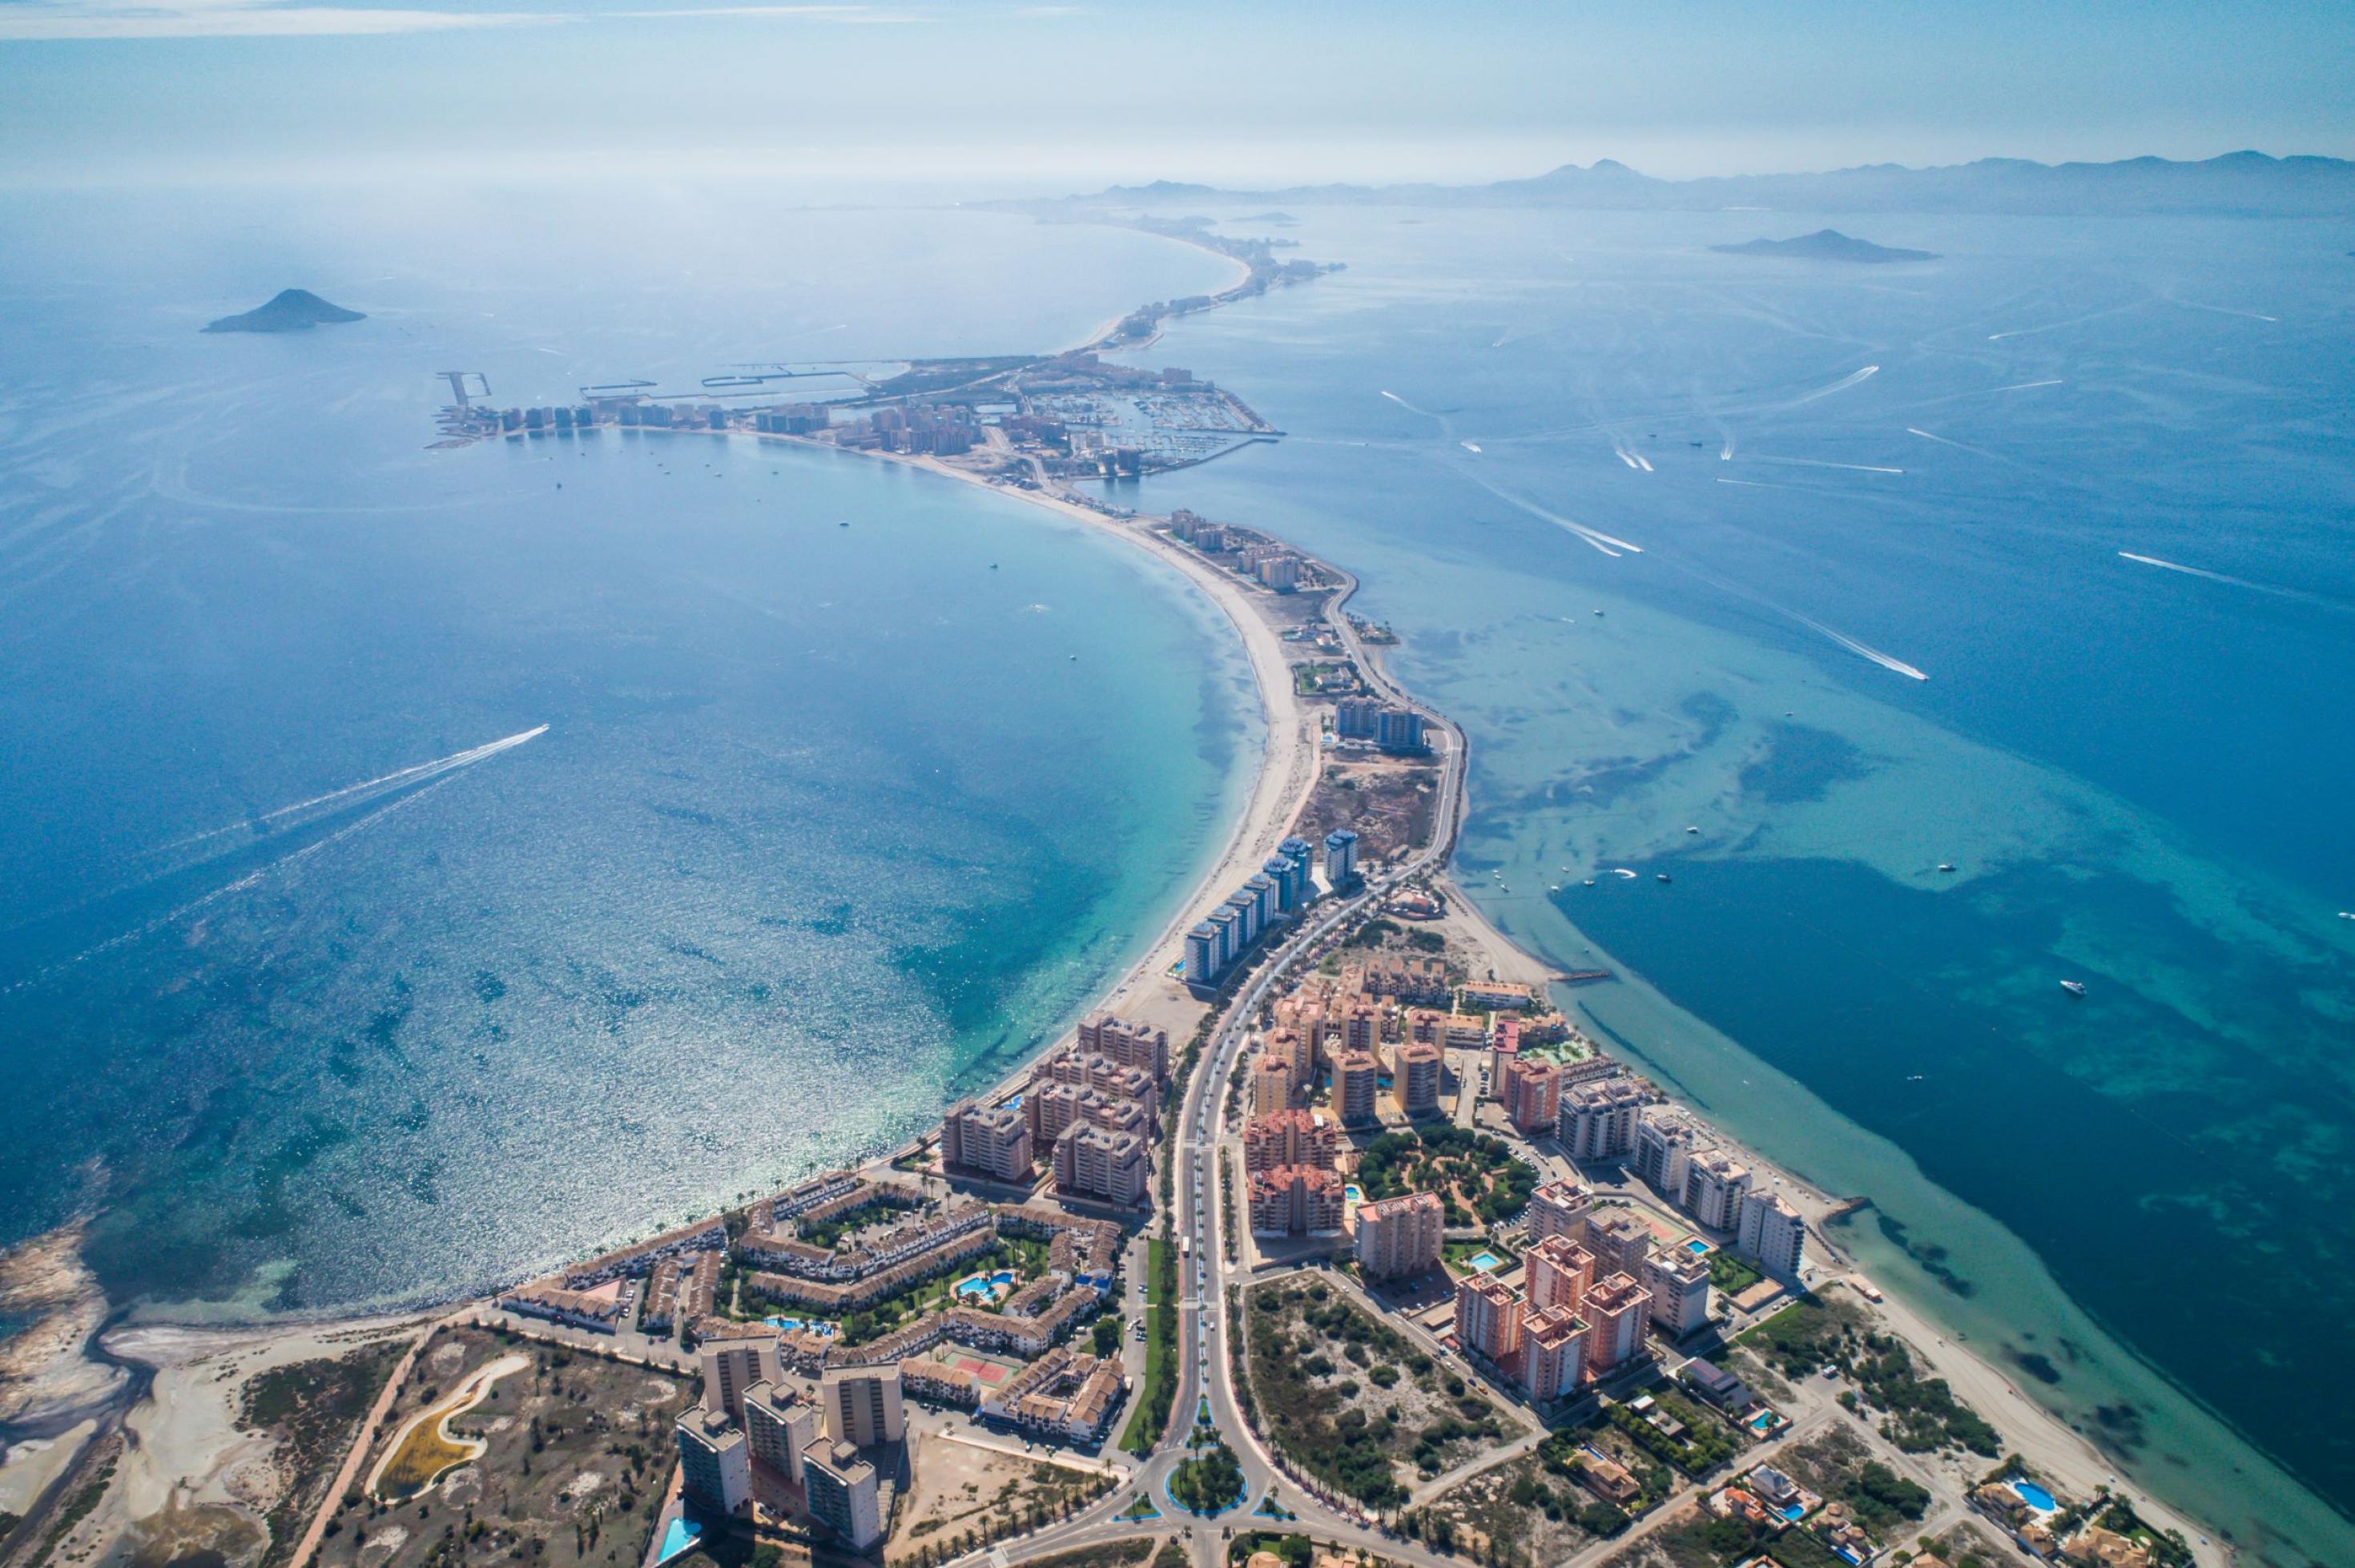 Luftaufnahme der stark bebauten Landzunge, die das die Salzwasserlagune Mar Menor vom Mittelmeer abtrennt